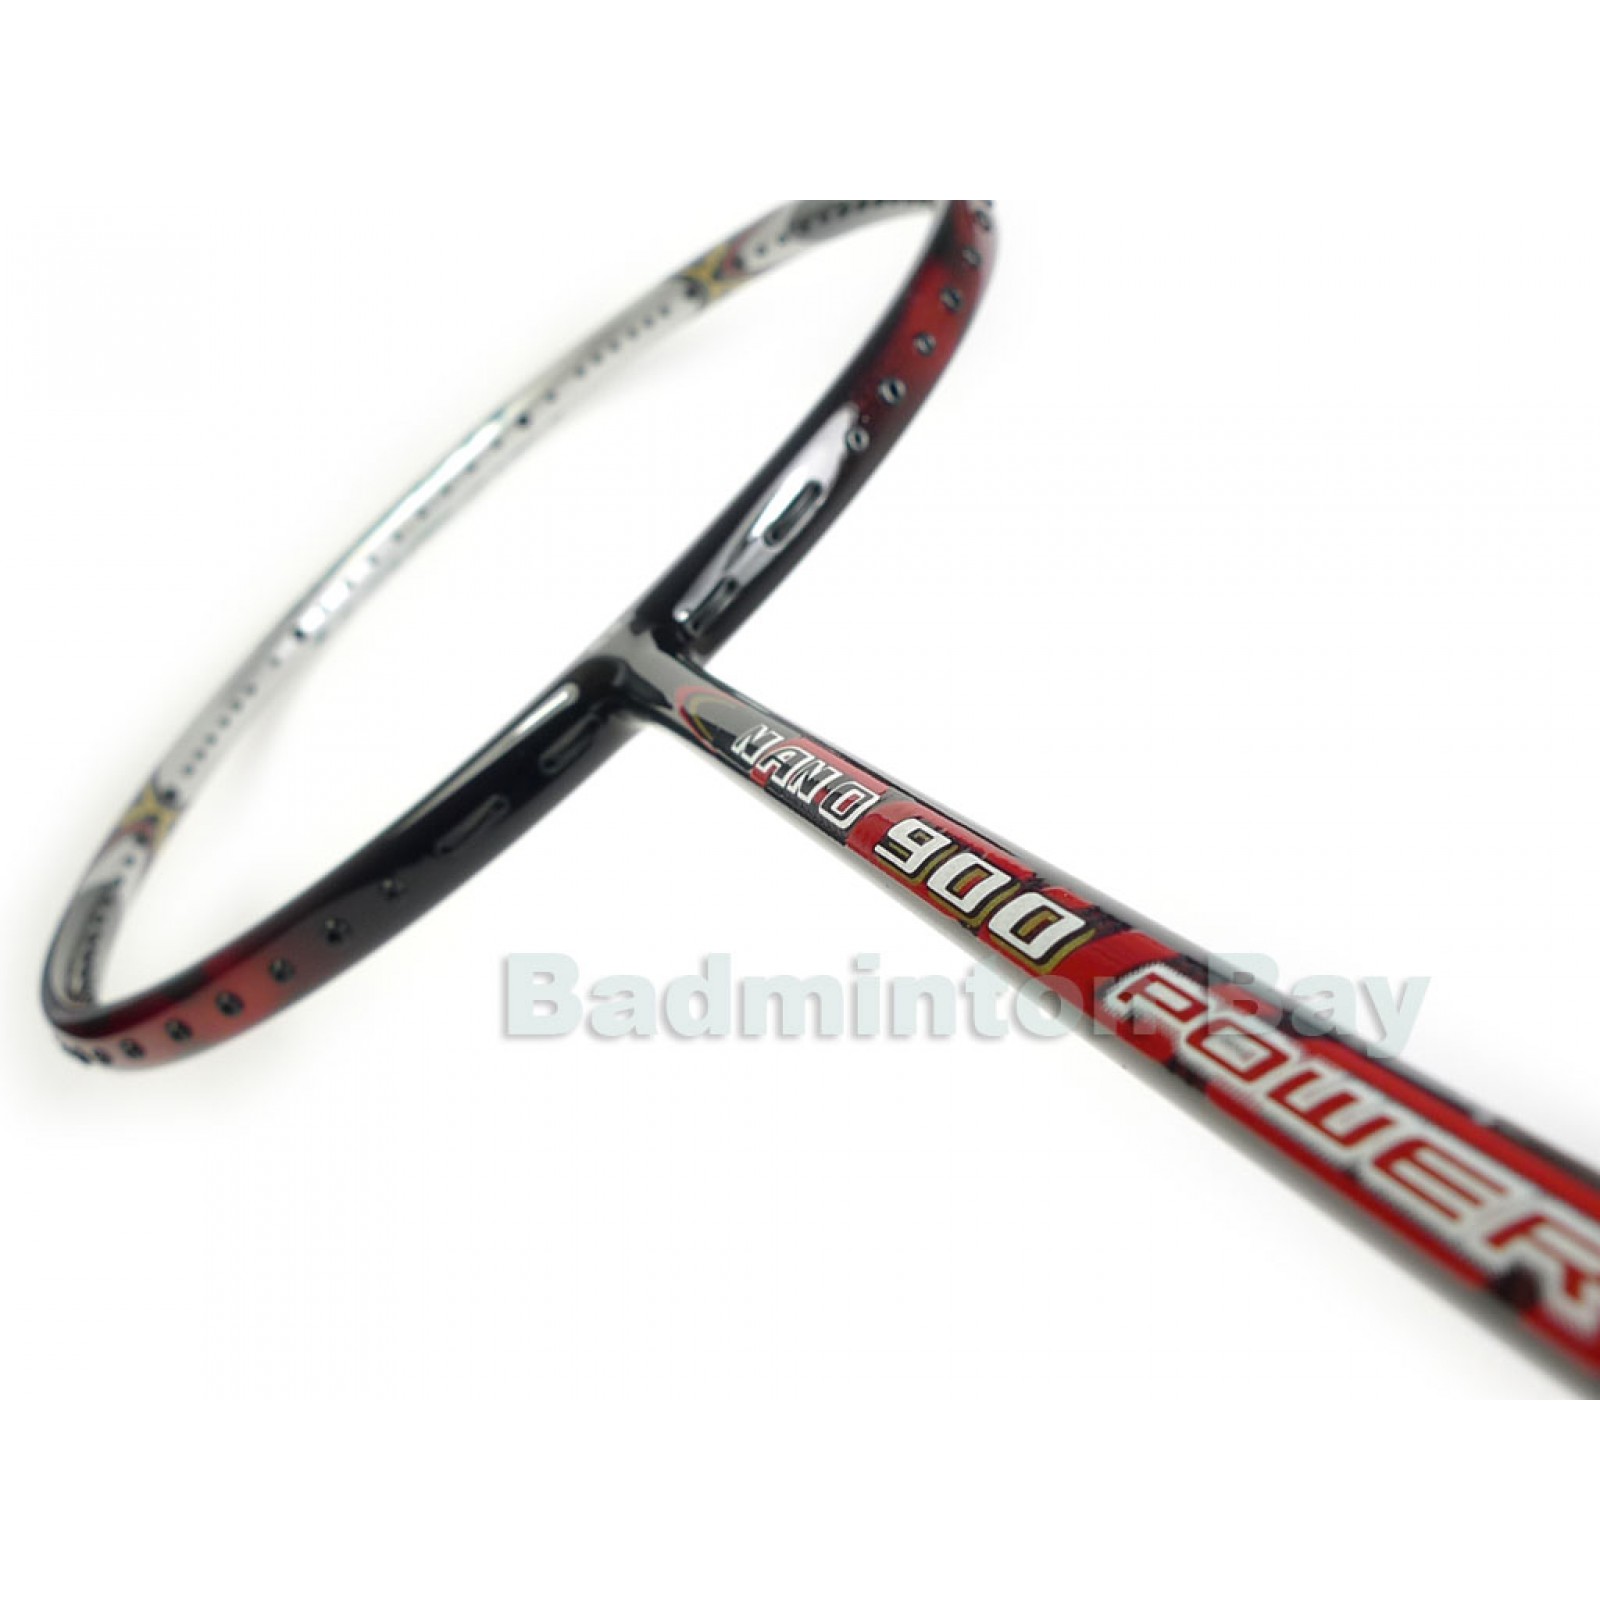 Apacs Badminton Racket Nano 9900